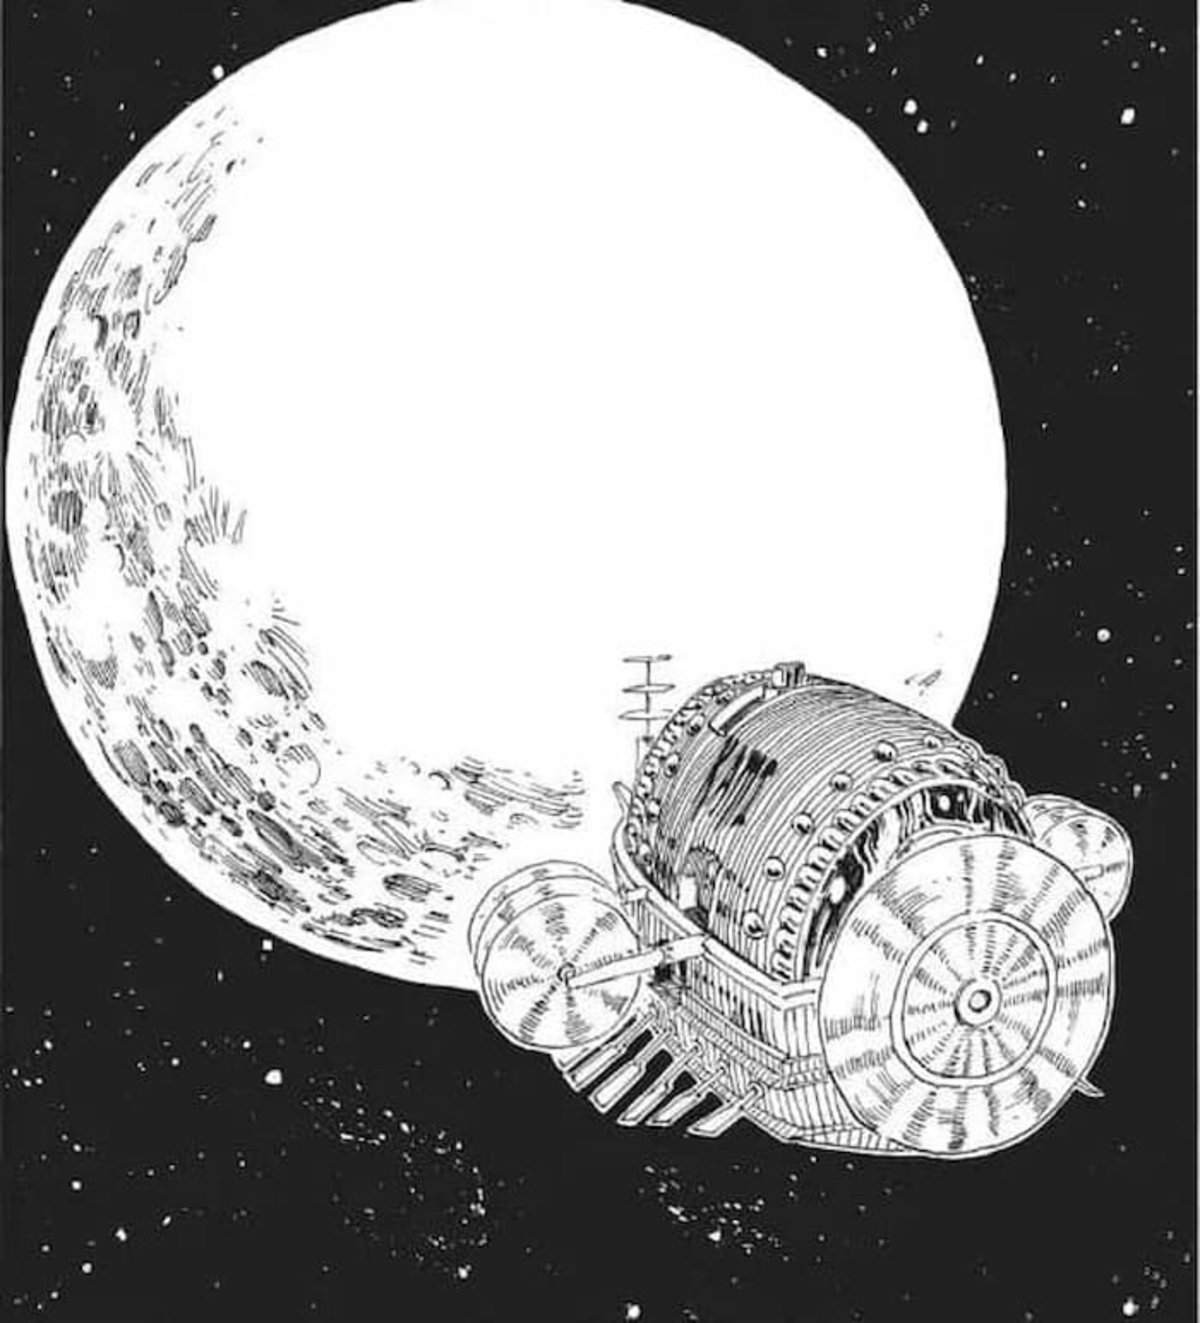 El viaje de Enel a la luna, ha abierto la puerta a grandes posibilidades en la serie